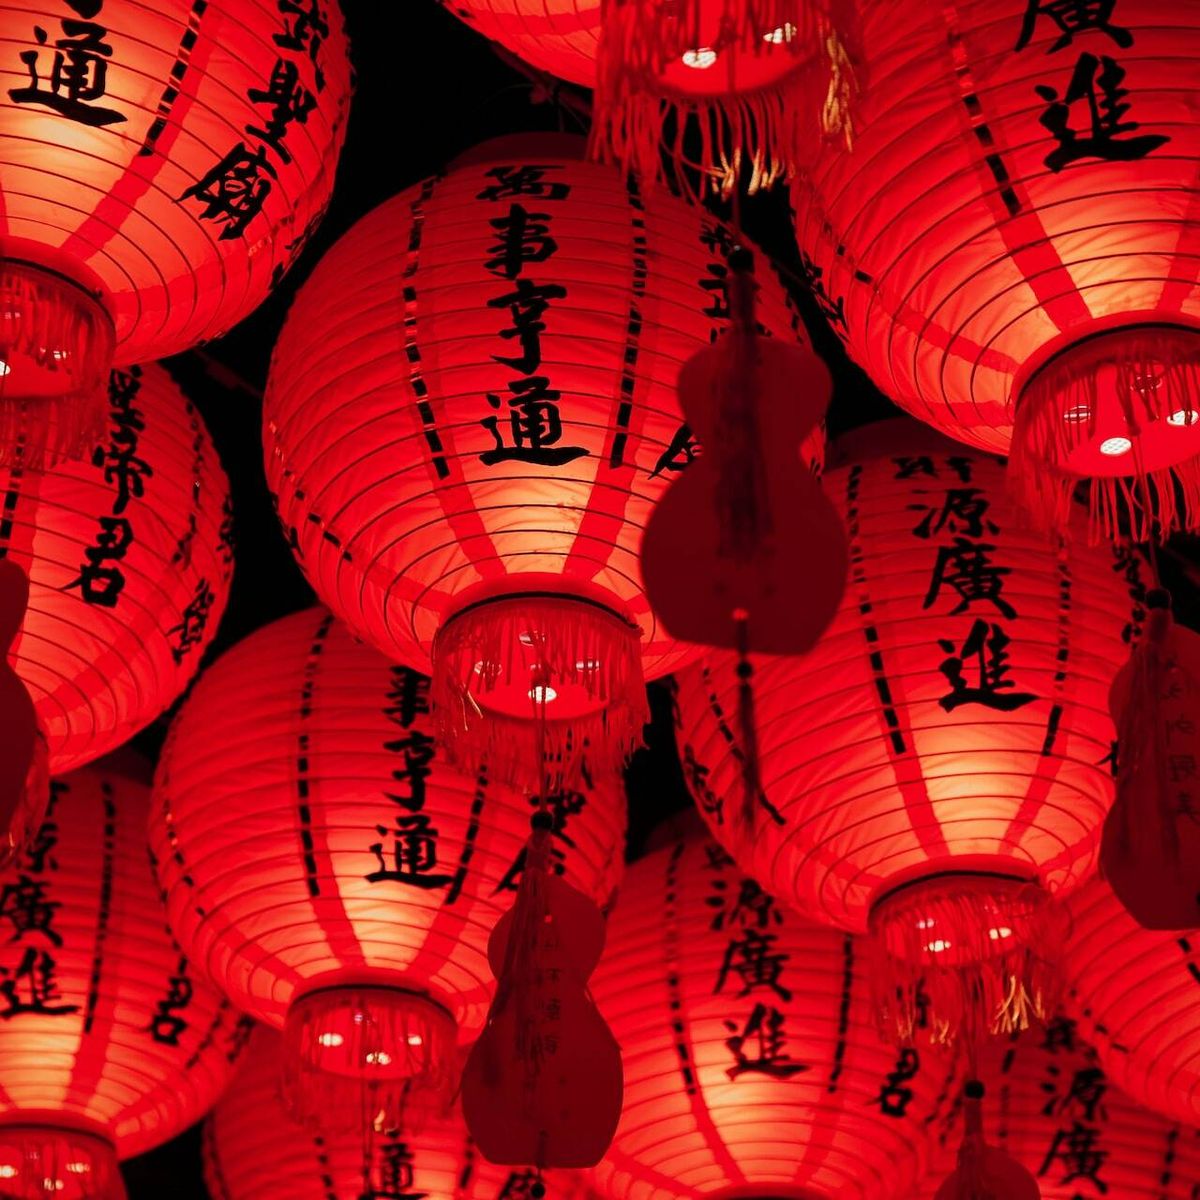 Año Nuevo Chino: ¿Qué animal es el 2023 en el calendario chino?